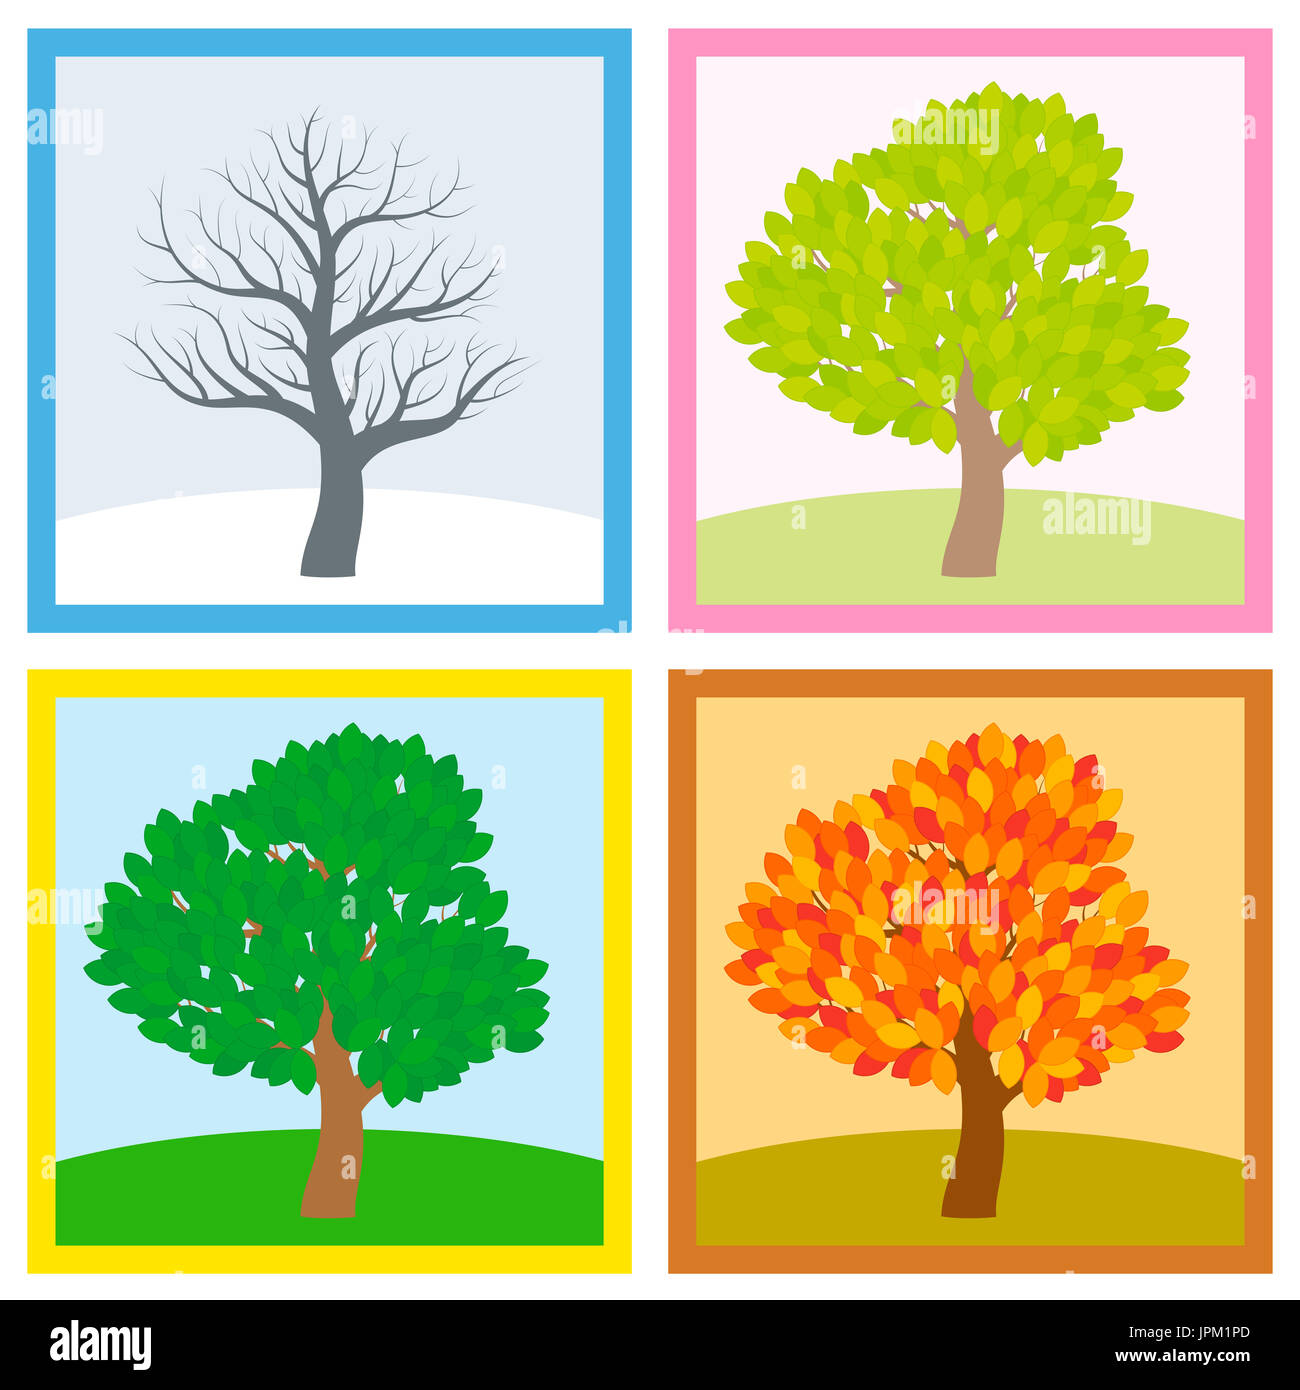 Arbre en hiver, printemps, été et automne avec le feuillage dans différentes couleurs et nuances typiques alors que les feuilles tourner tout au long d'une année. Banque D'Images